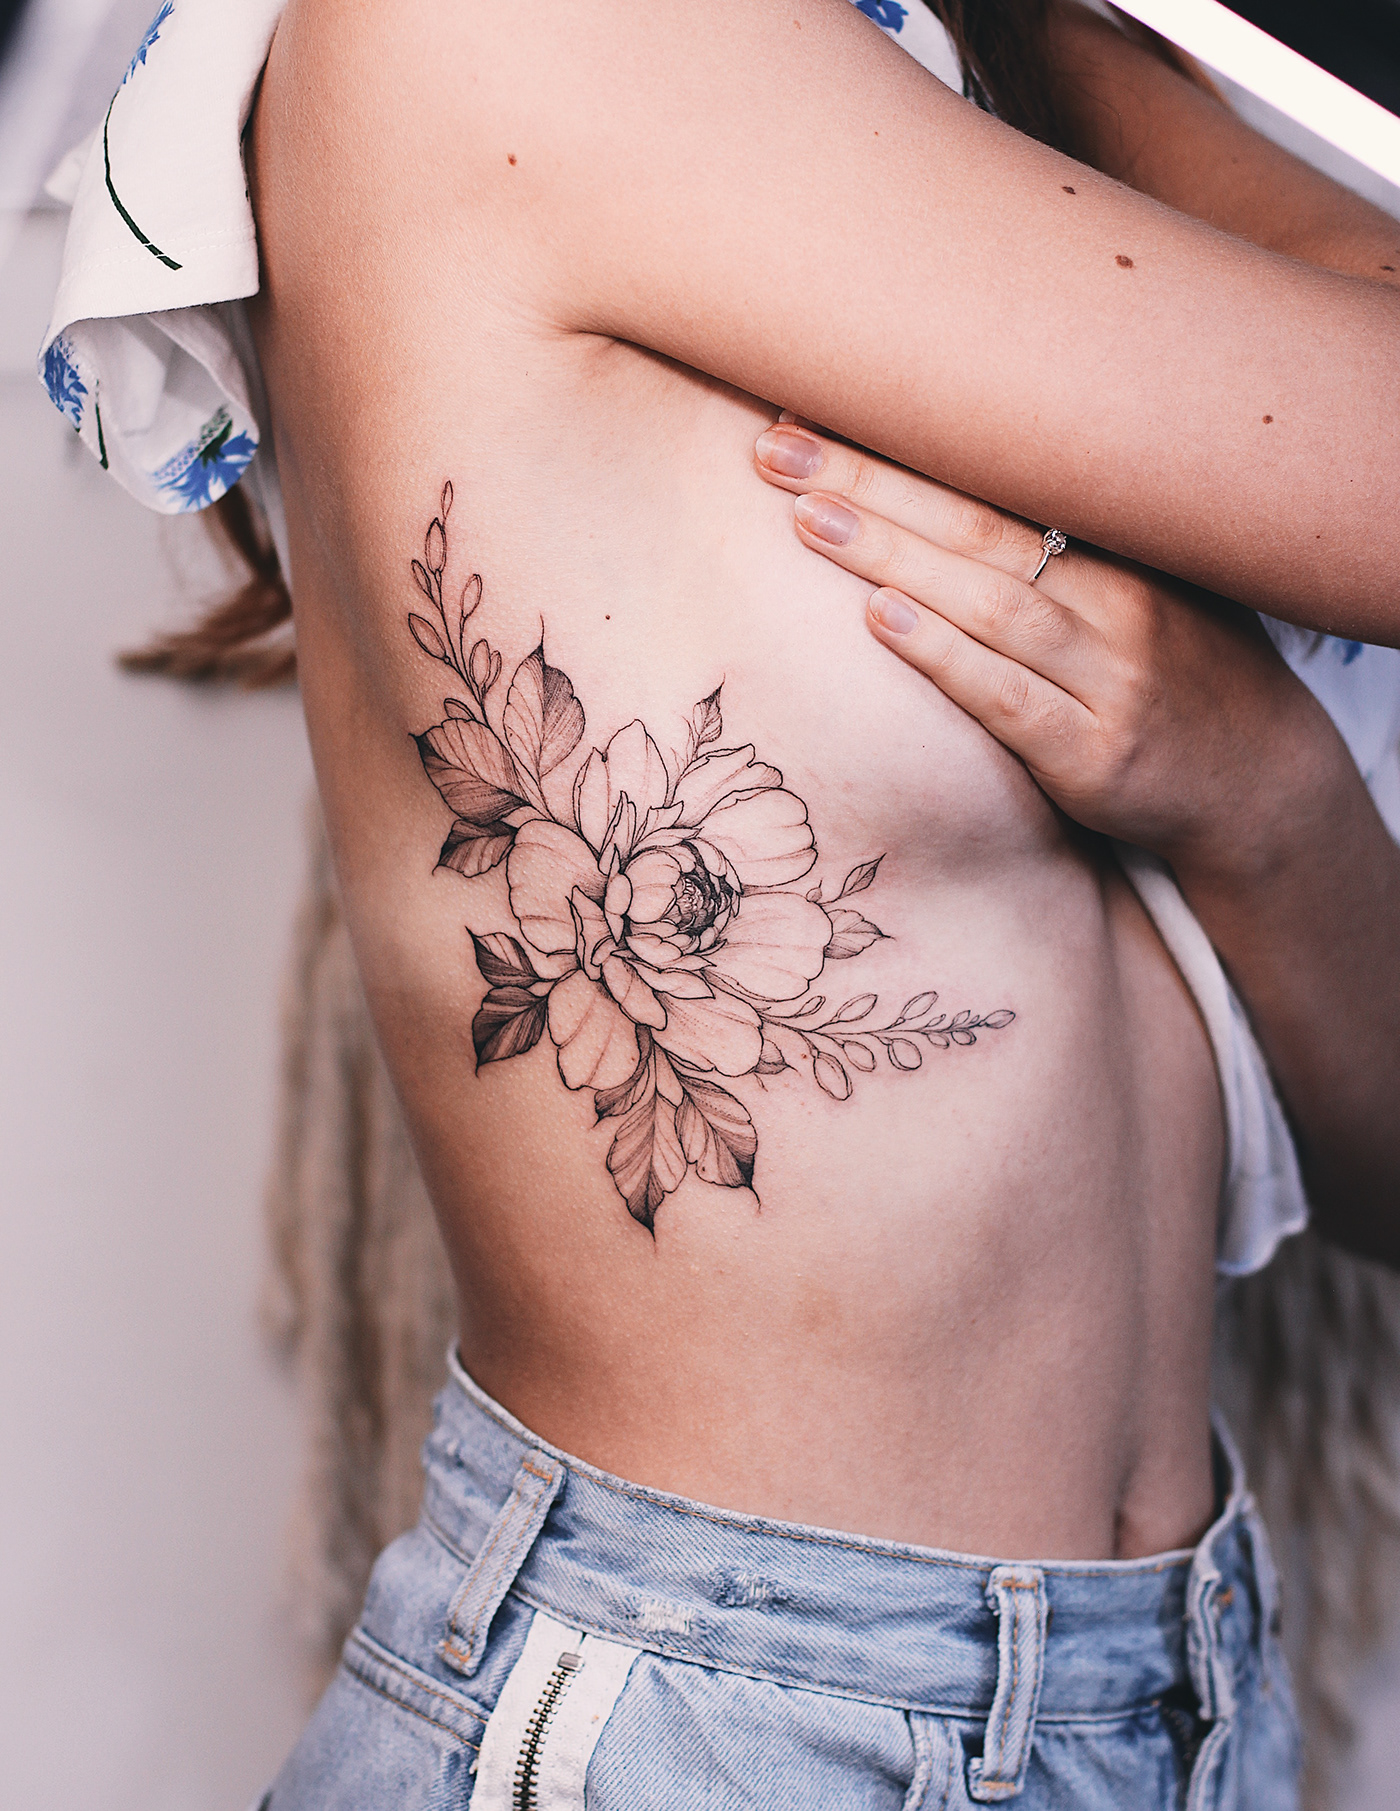 tattoo Tattooart inks Flowers Nature flowers tattoo Floral Heart plants